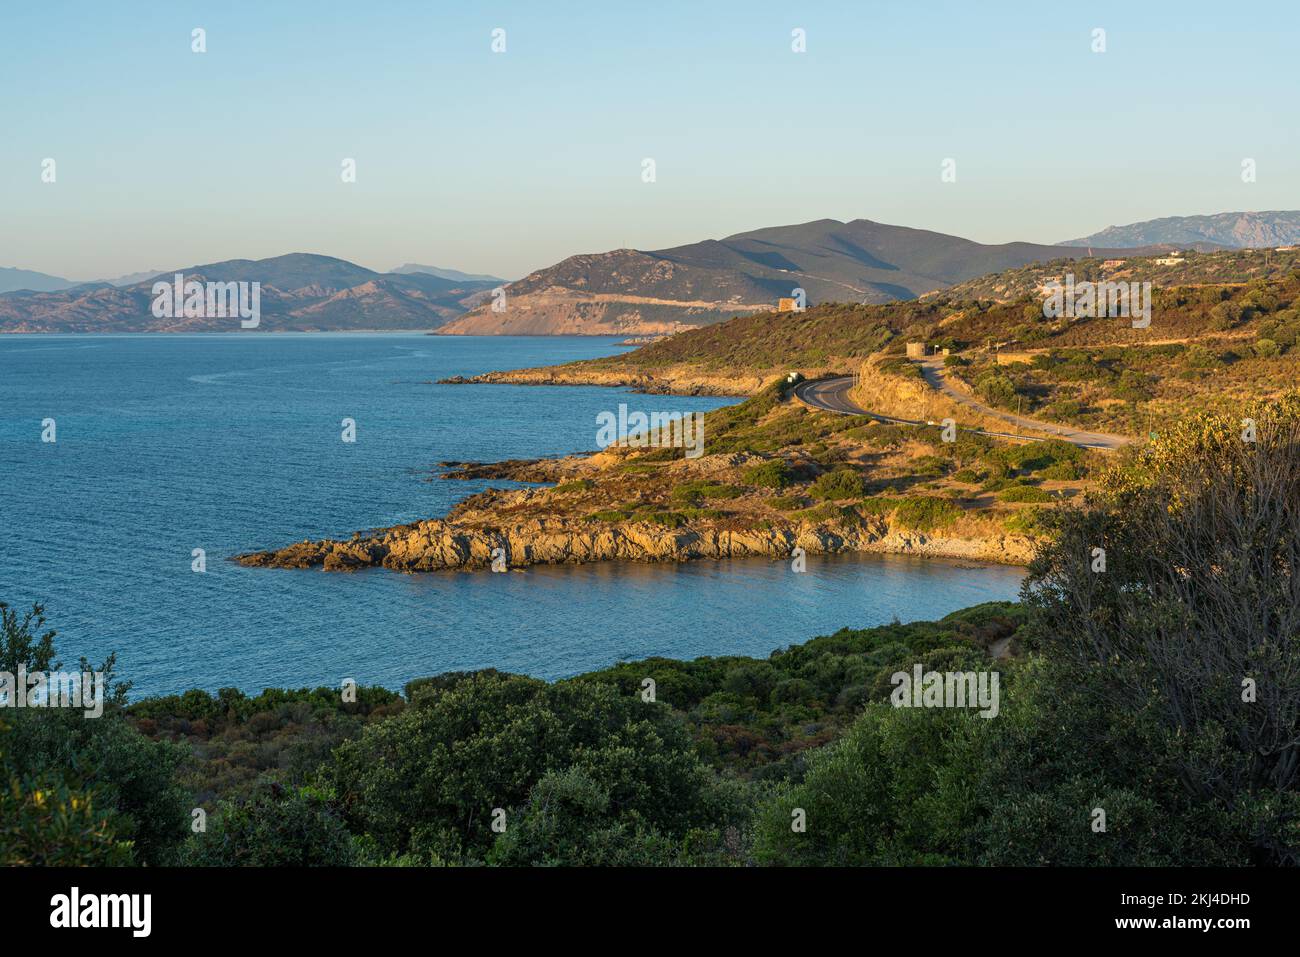 Paesaggio tardo pomeriggio a Ile Rousse (Isola Rossa), in Corsica, Francia. Foto Stock